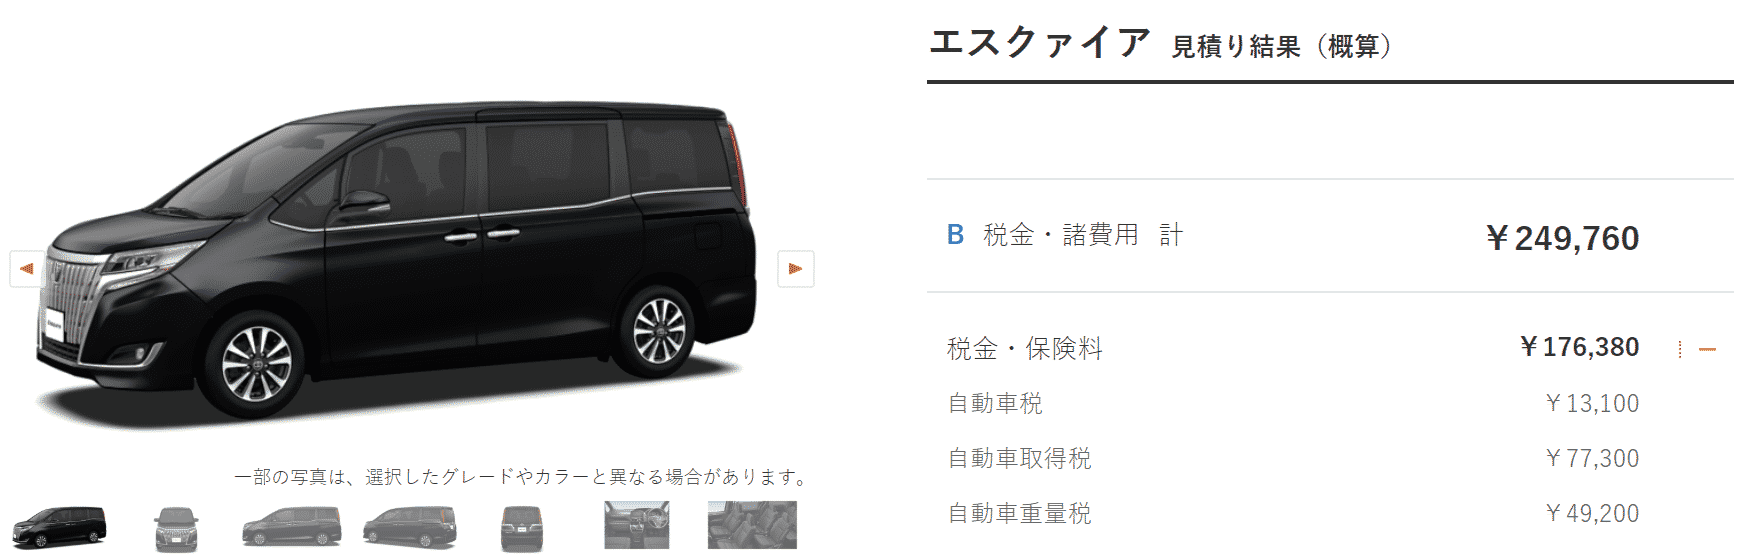 「Xi“サイドリフトアップチルトシート装着車”」の画像